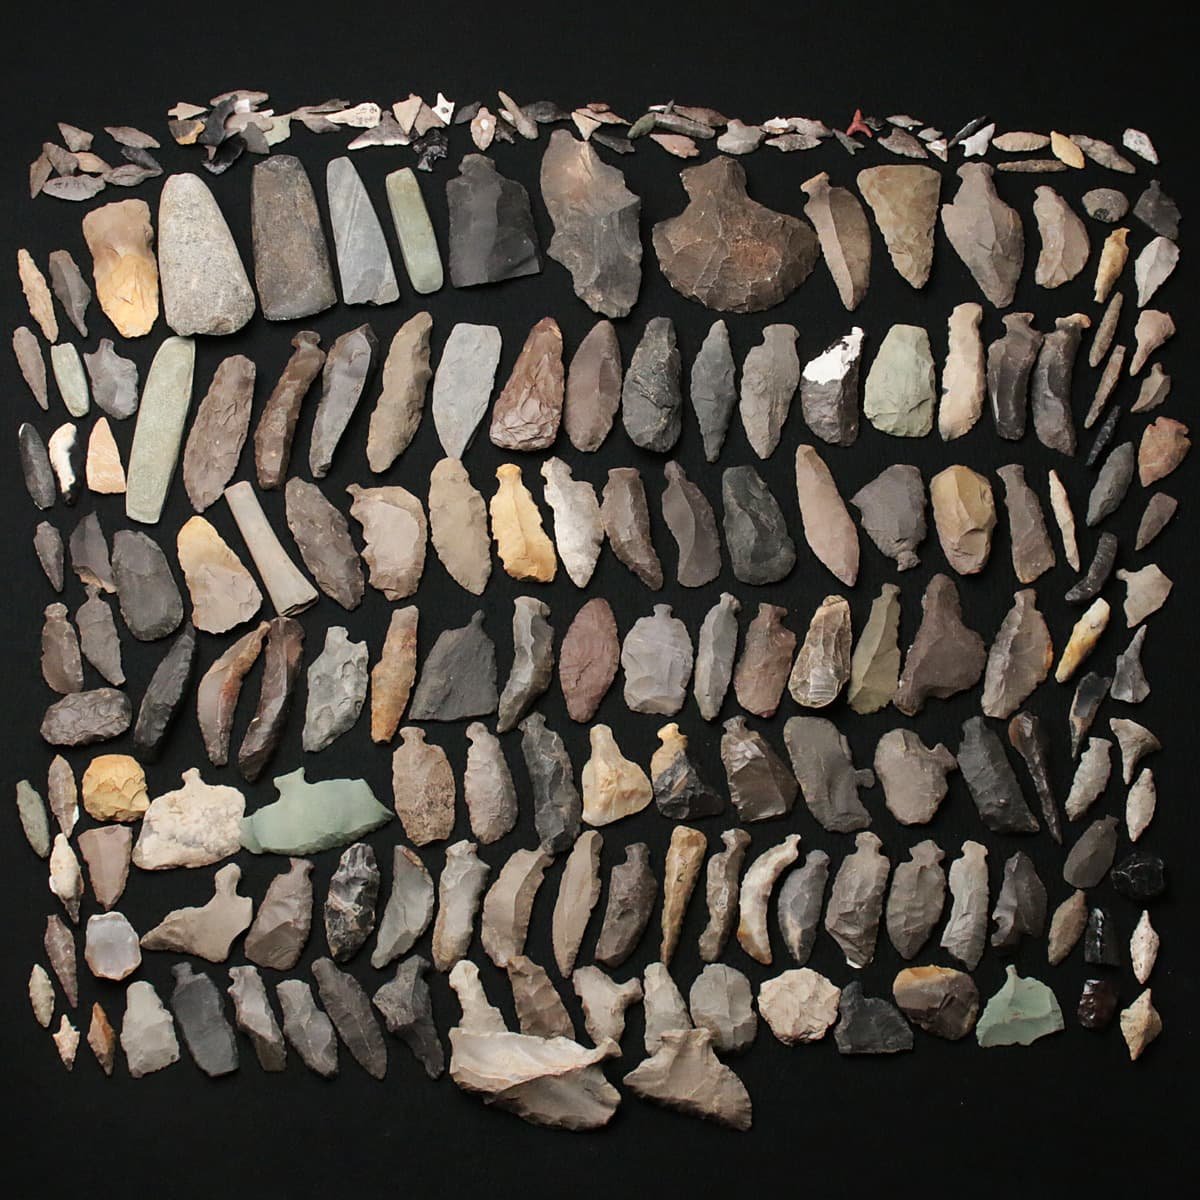 Yahoo!オークション - EF397 遺跡出土品 発掘品 旧石器 握槌石器